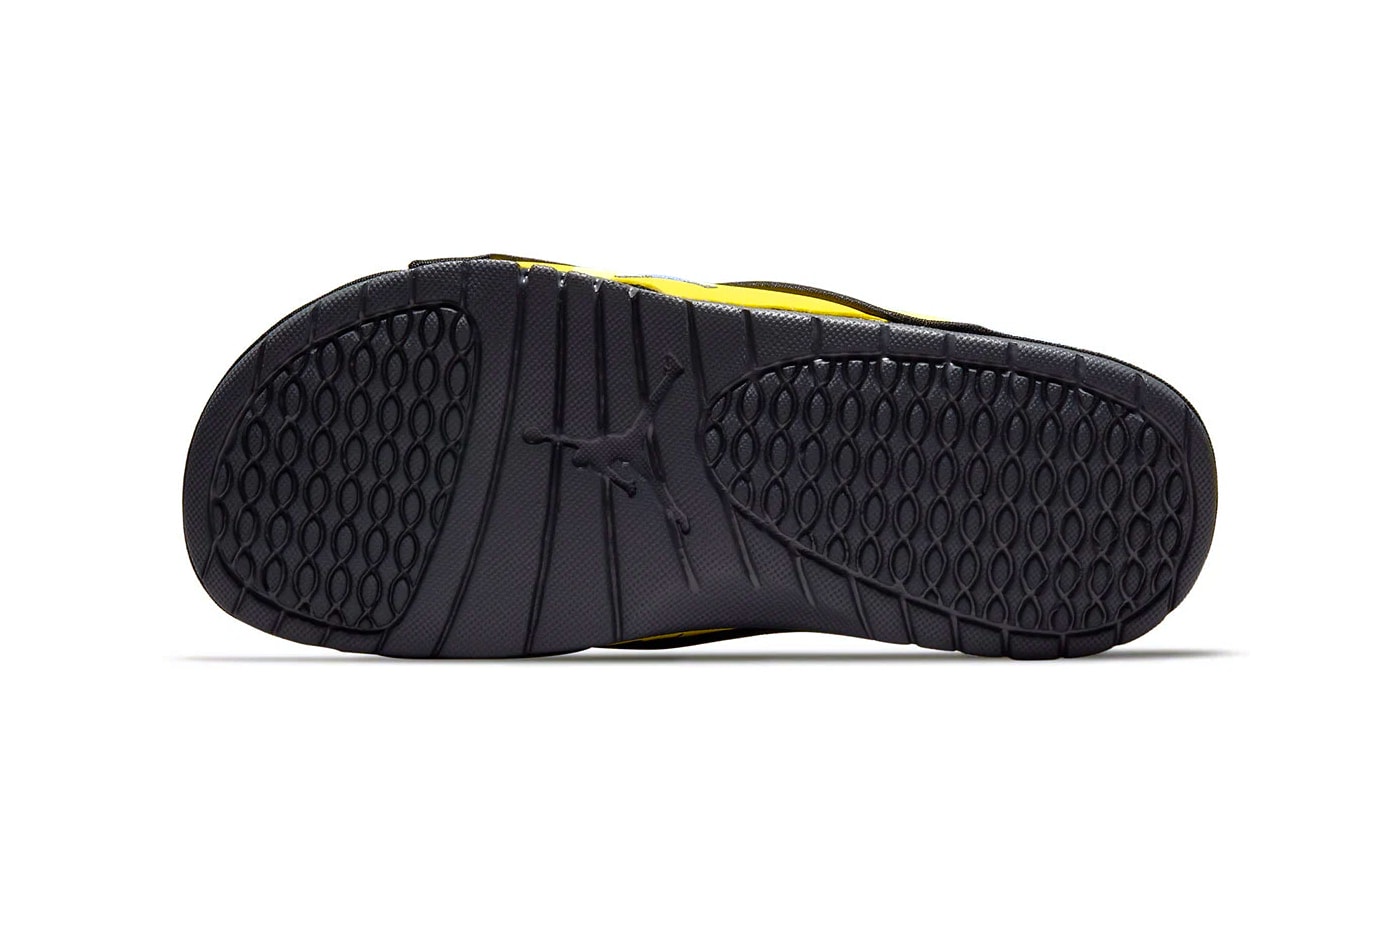 ジョーダン ブランドからエア ジョーダン 4 “ライトニング”のカラーウェイを纏ったサンダル ハイドロ スライドがリリースか Jordan brand Hydro Slide IV Lightning Colorway release DN4238-701 sandals slides footwear AJ4 IV